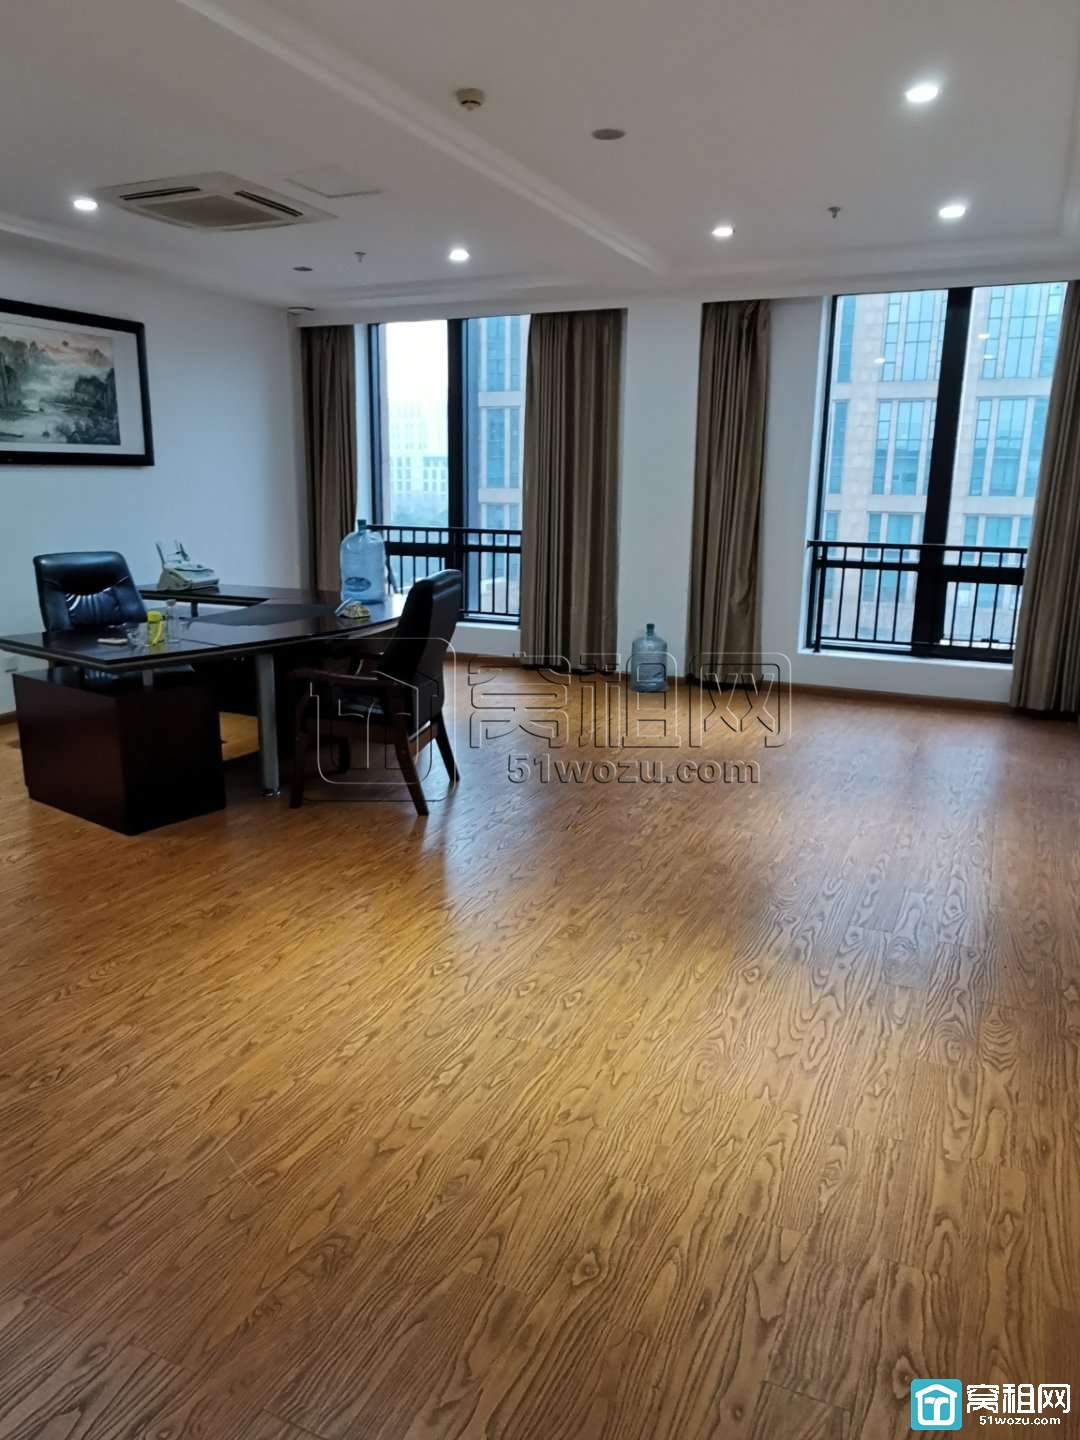 宁波高新区研发园区5楼一套面积55平米办公室出租(图3)